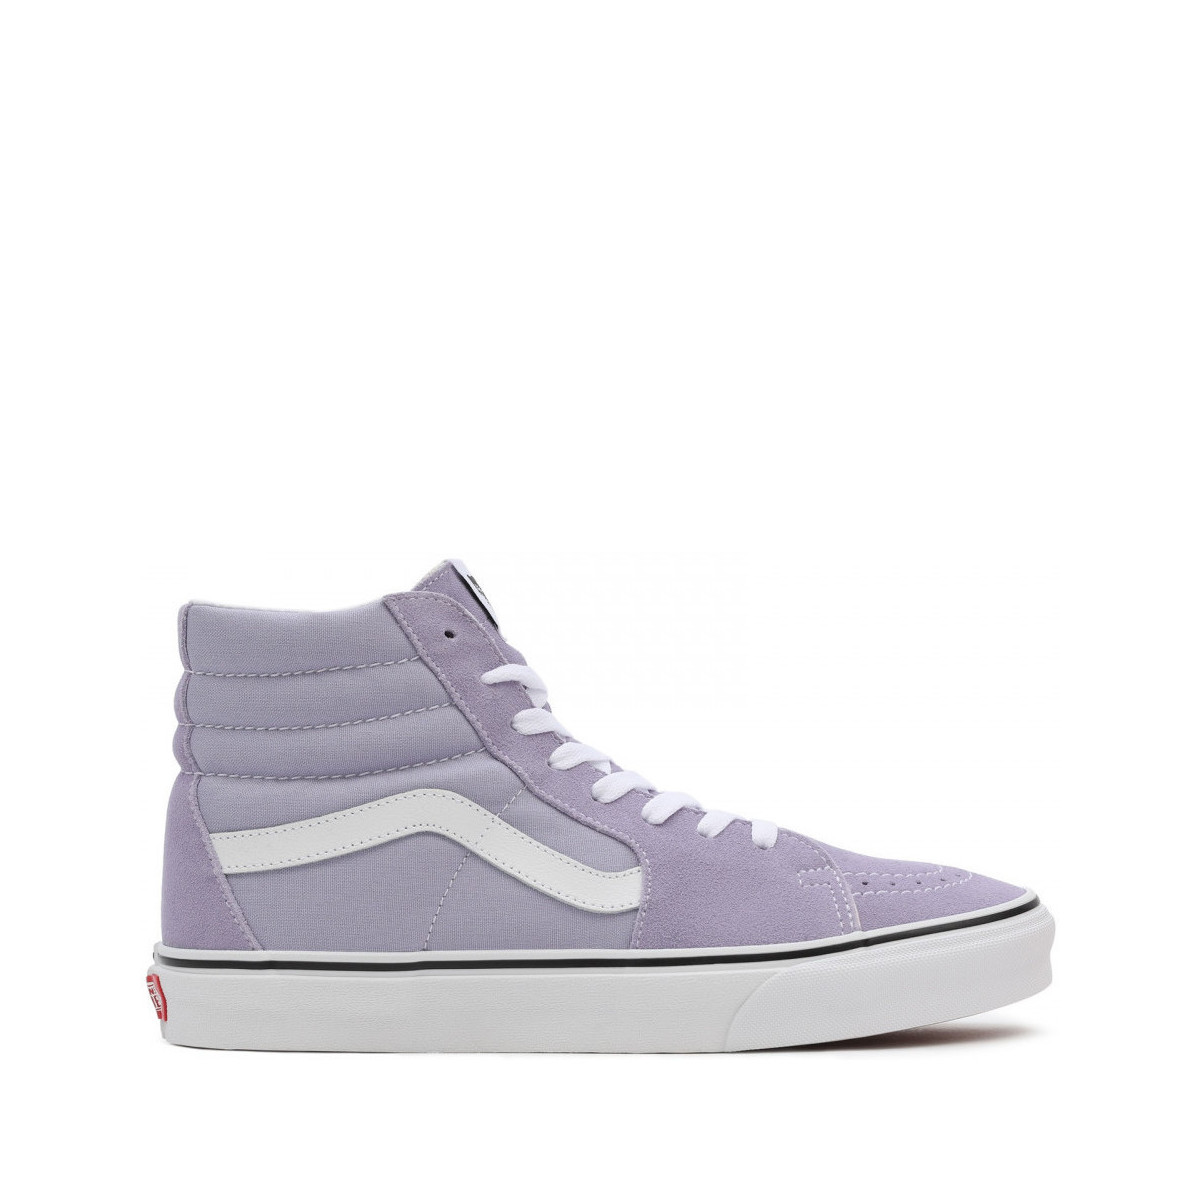 Παπούτσια Skate Παπούτσια Vans Sk8-hi Violet